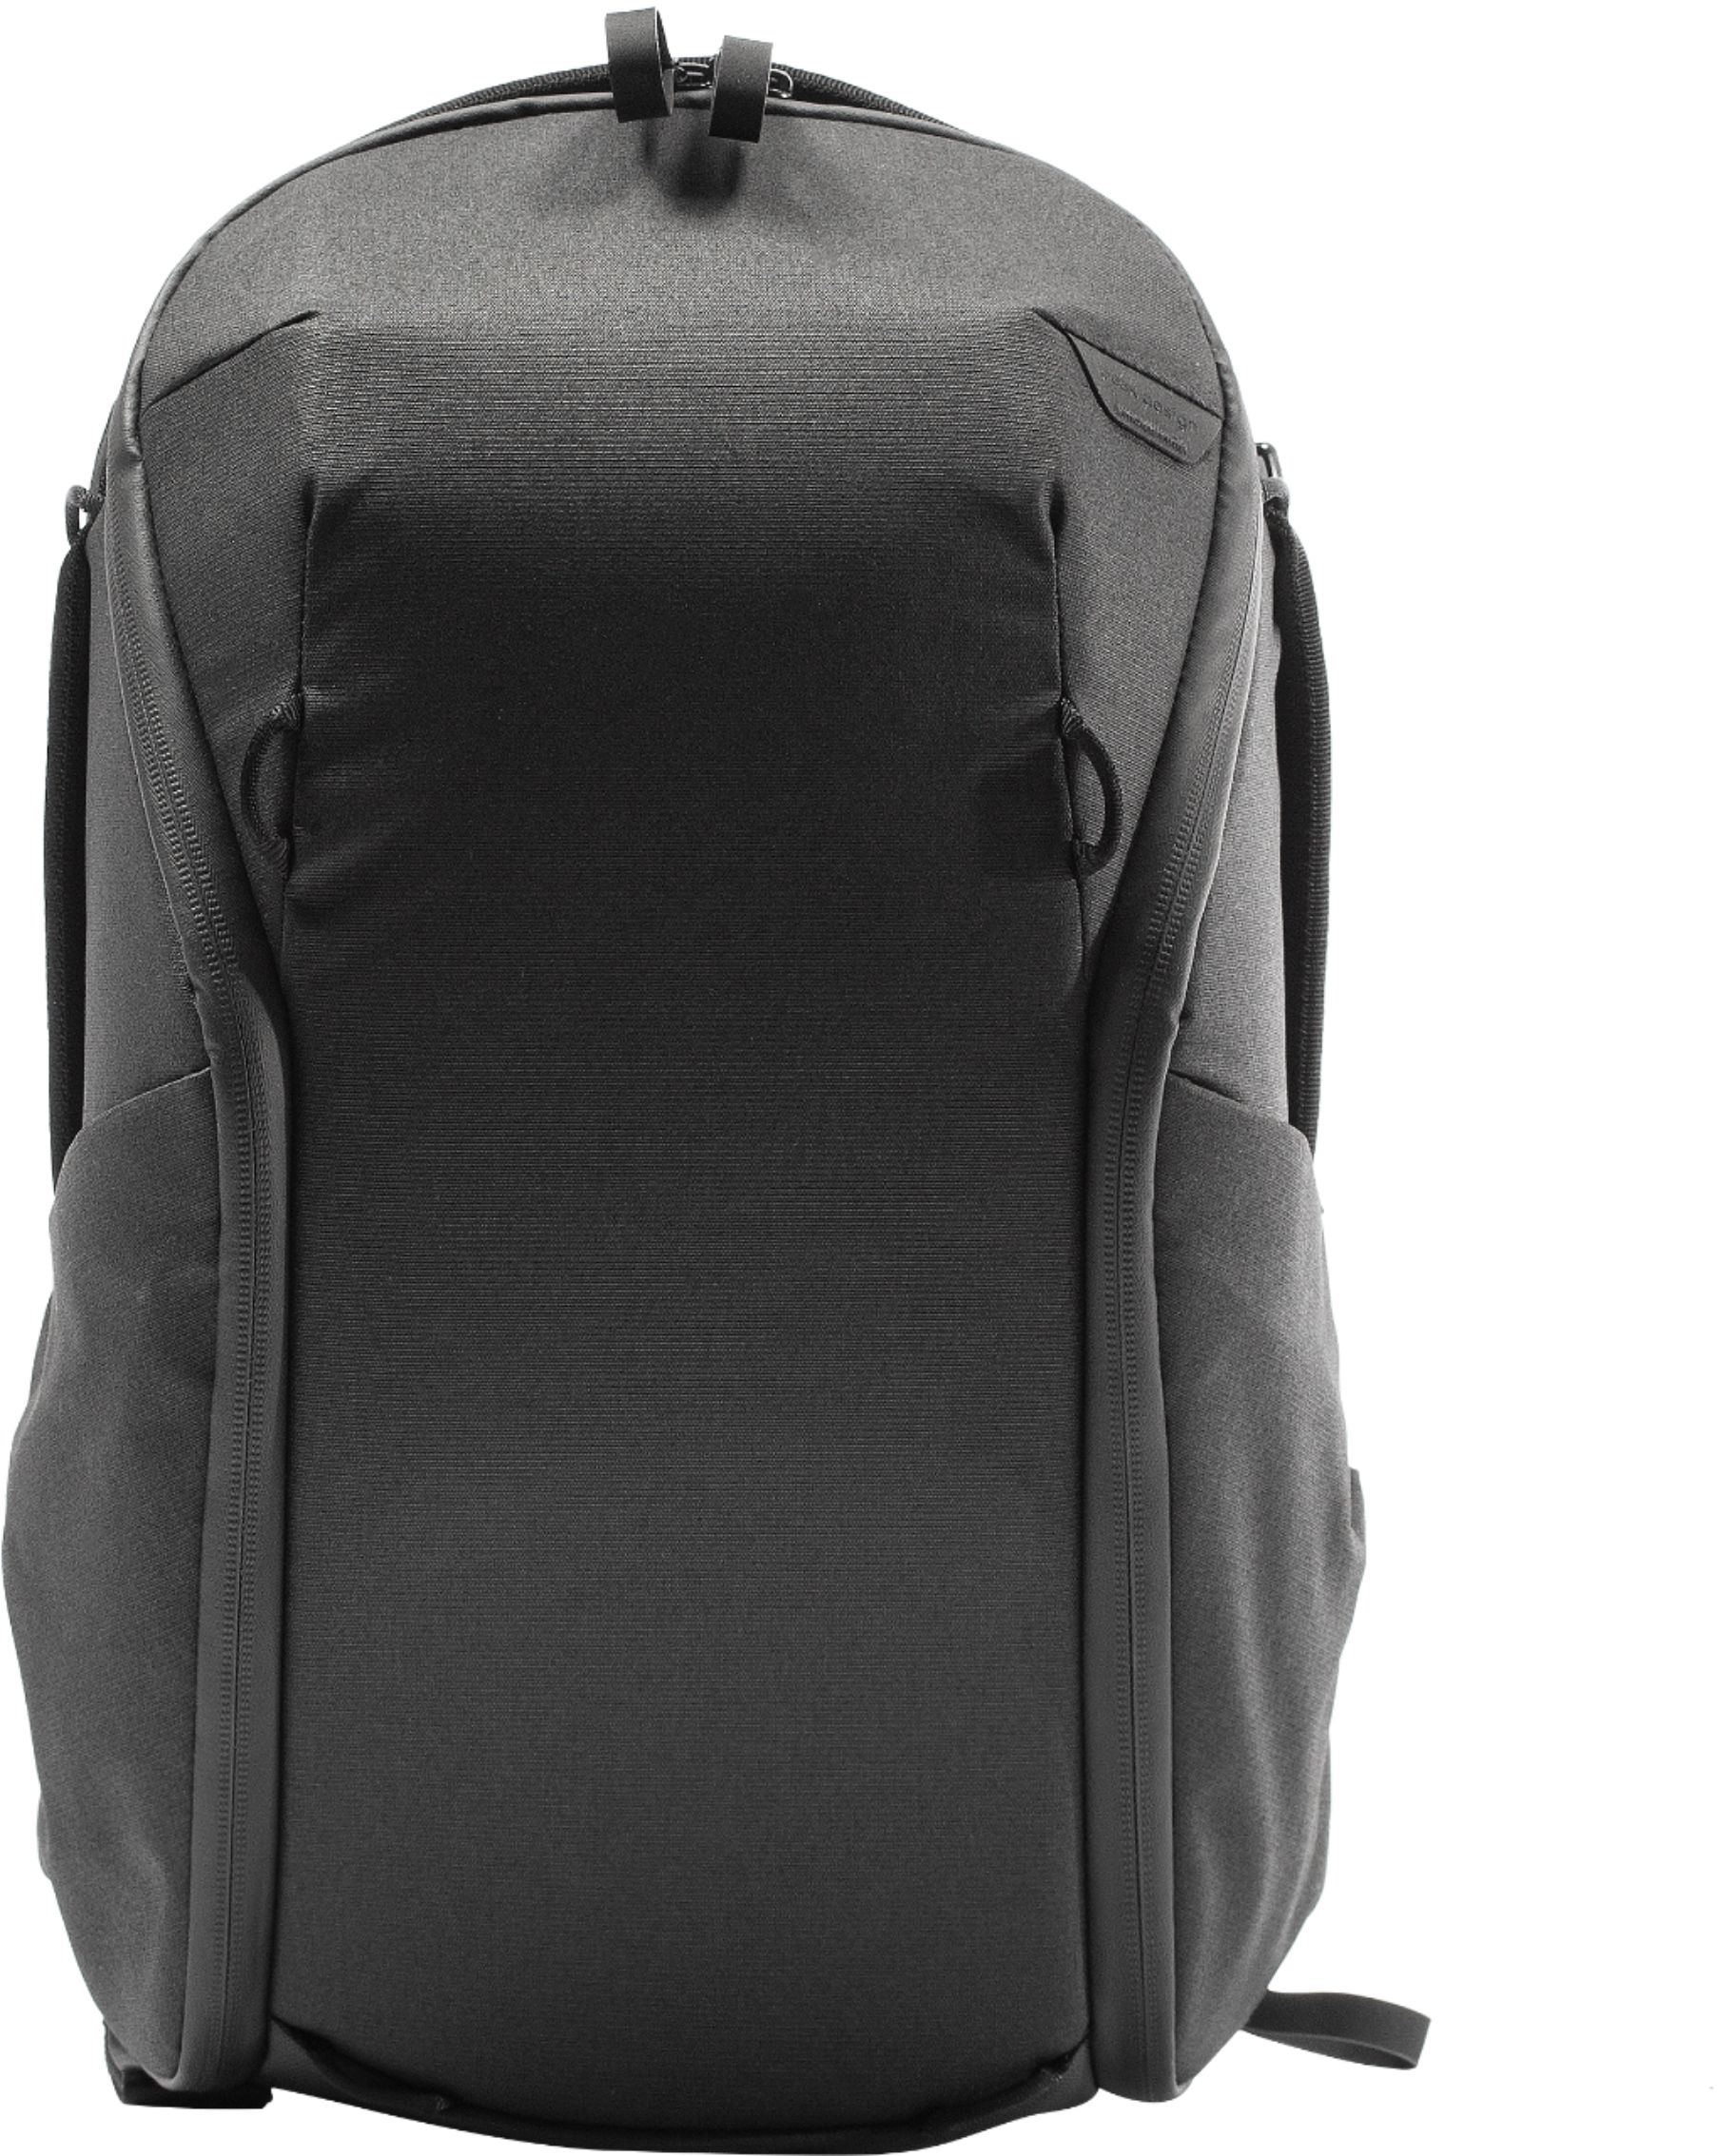 Peak Design - Everyday Backpack Zip 15L - Black